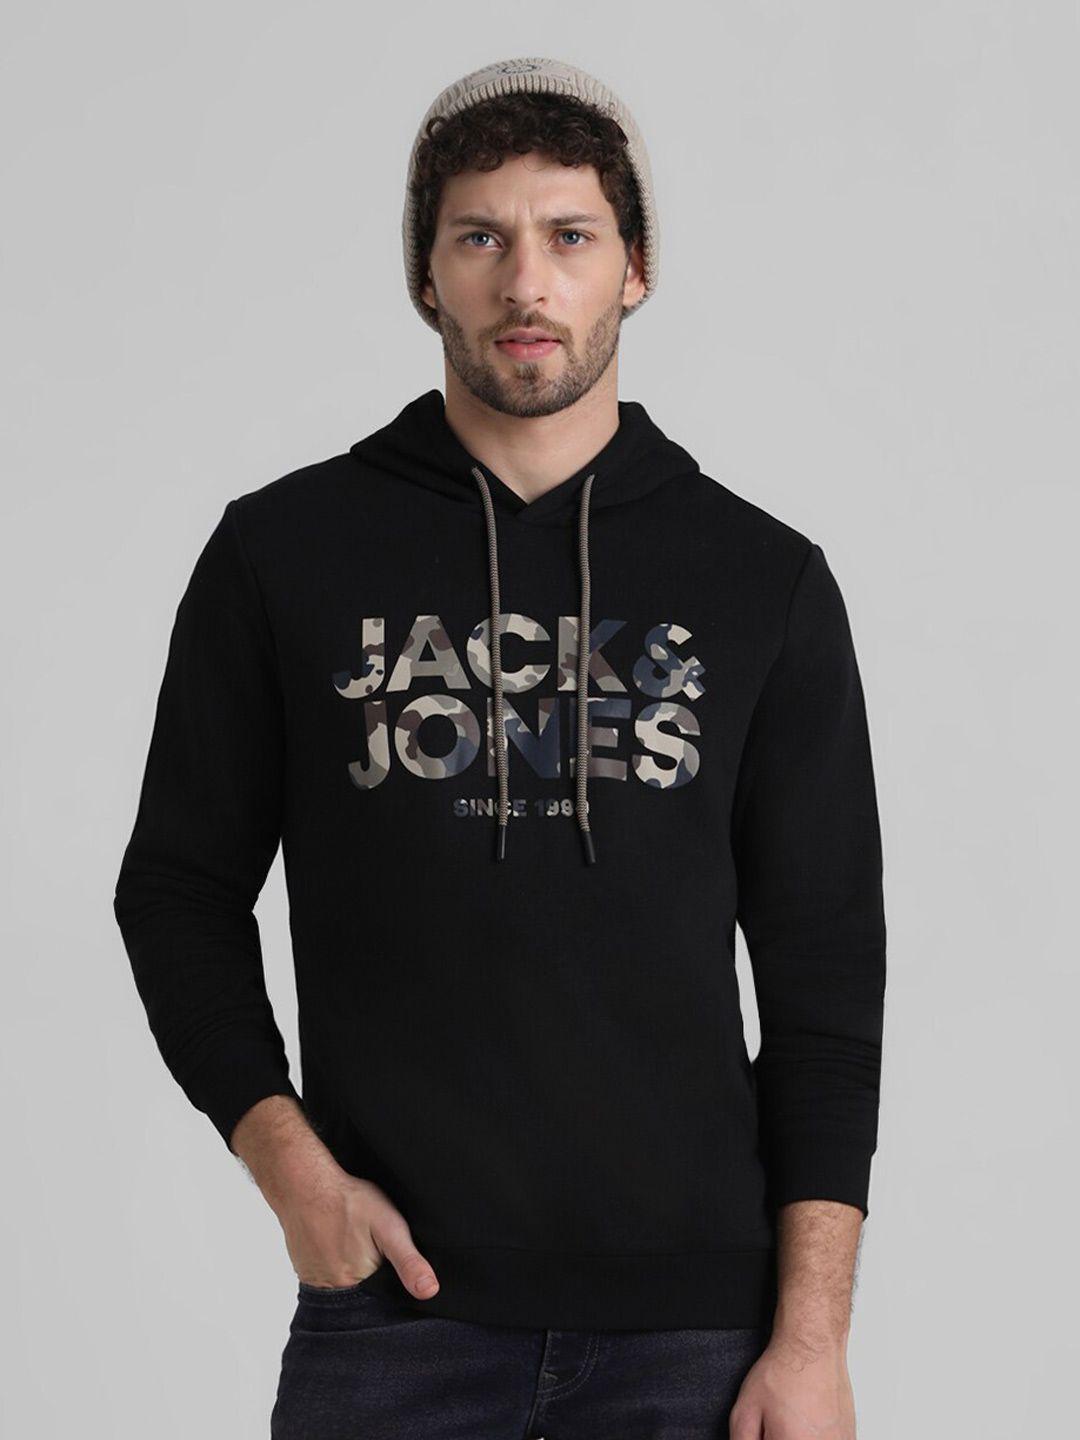 jack & jones brand logo printed hooded sweatshirt